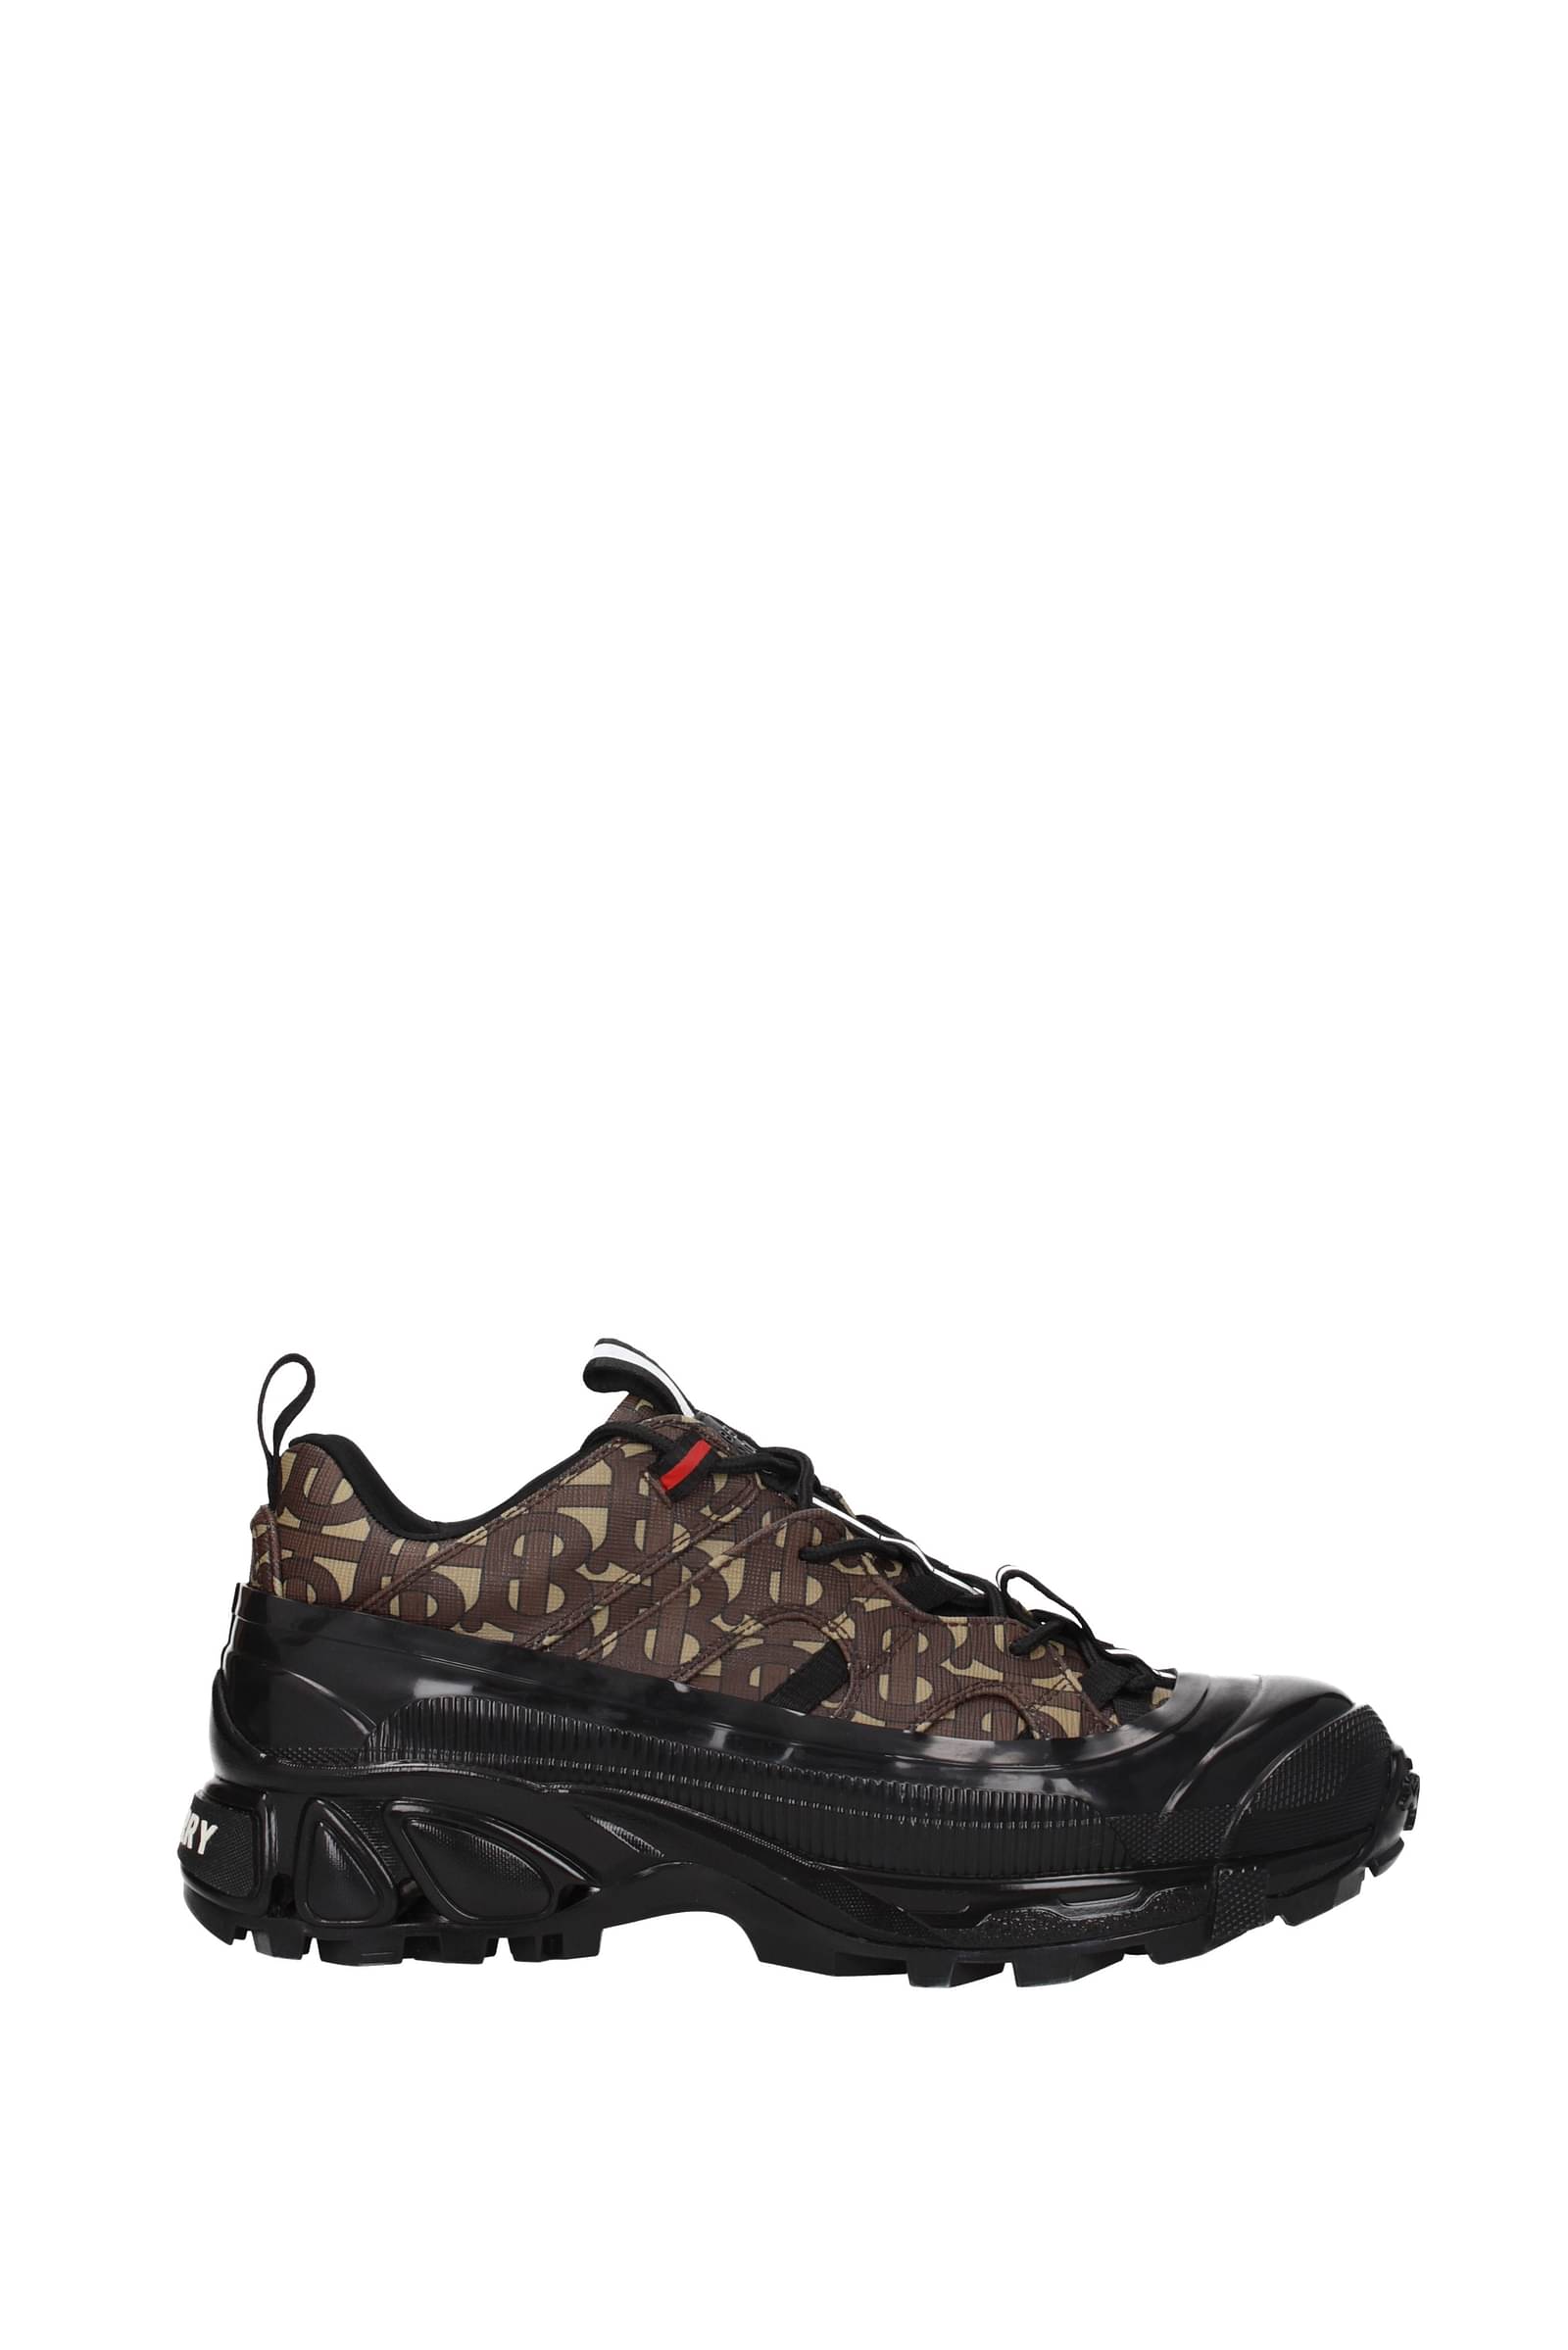 Burberry Sneakers Men 8021778 Fabric Black Brown 341,25€